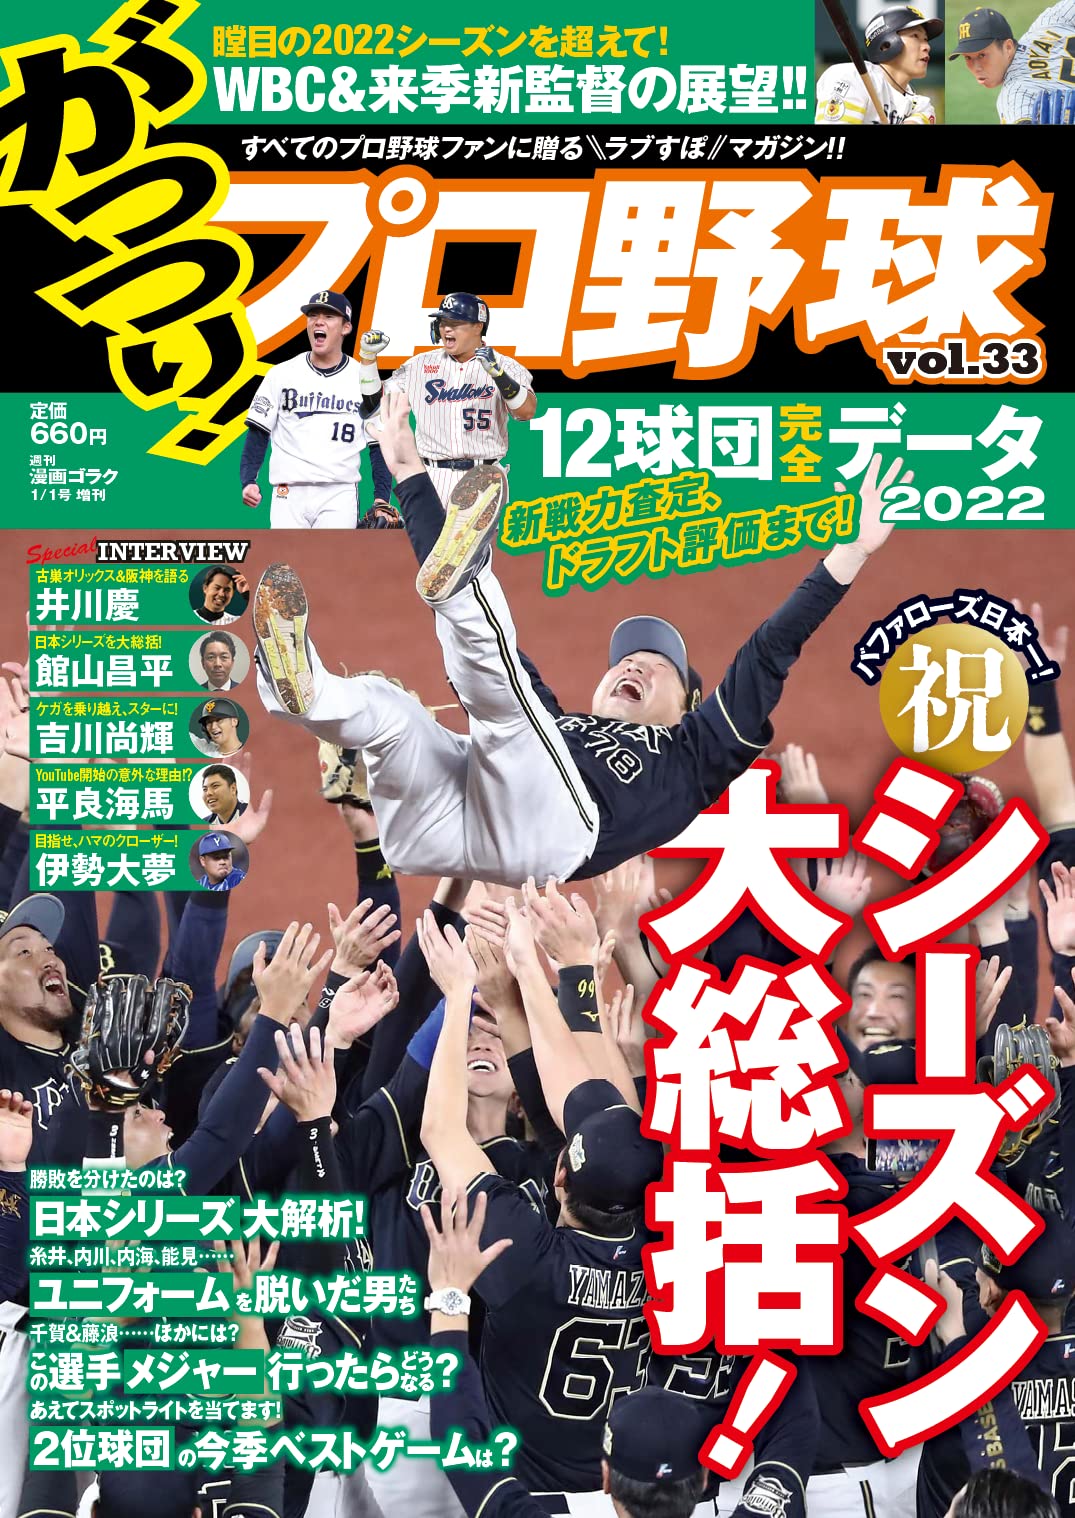 がっつり!プロ野球 (33) 2023年 1月 1日號 (漫 畵 ゴラク 增刊)